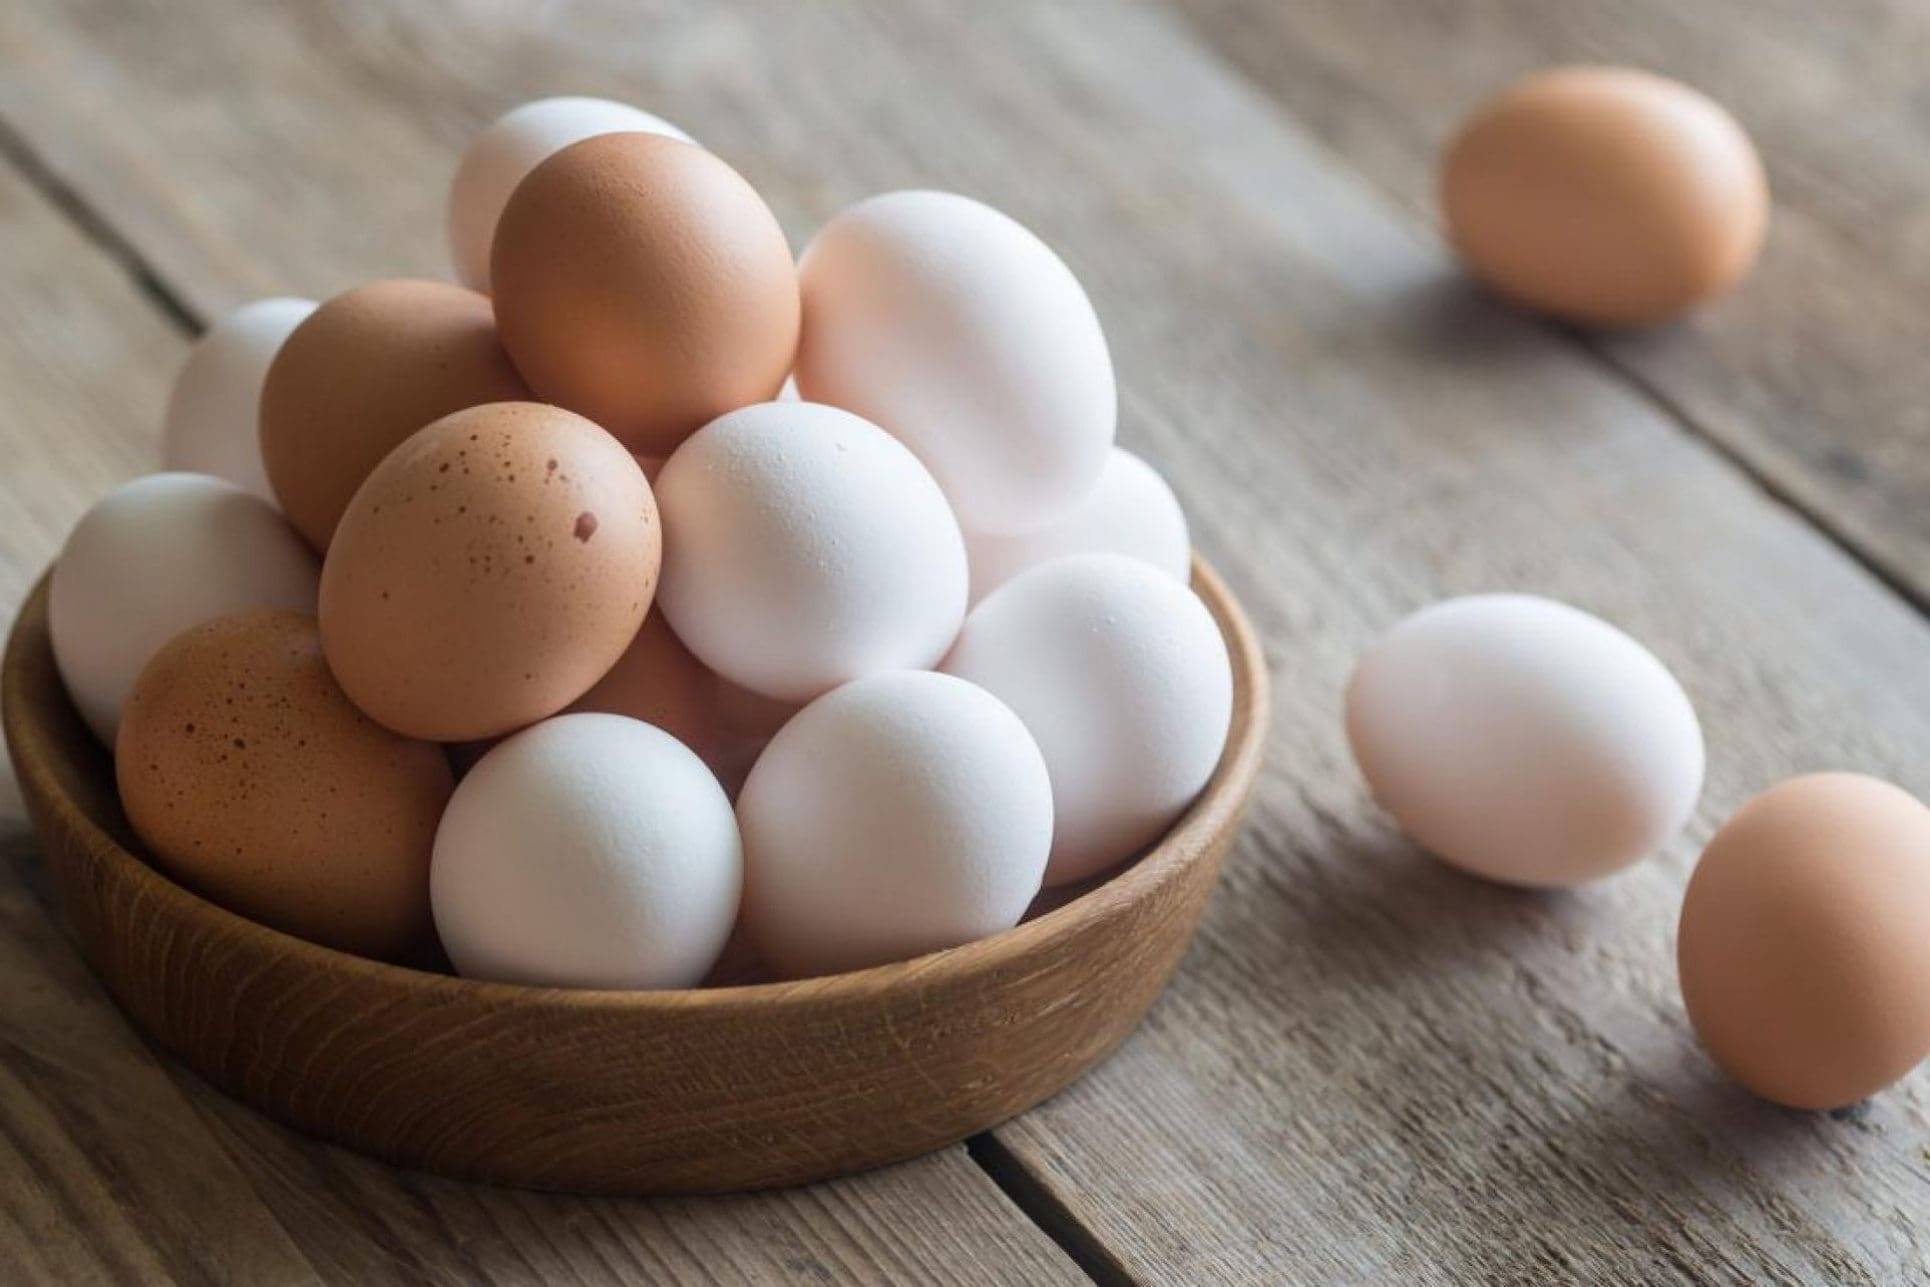 «В Польше почти 2 раза дешевле»: экономист прокомментировал стремительный рост цен на яйца